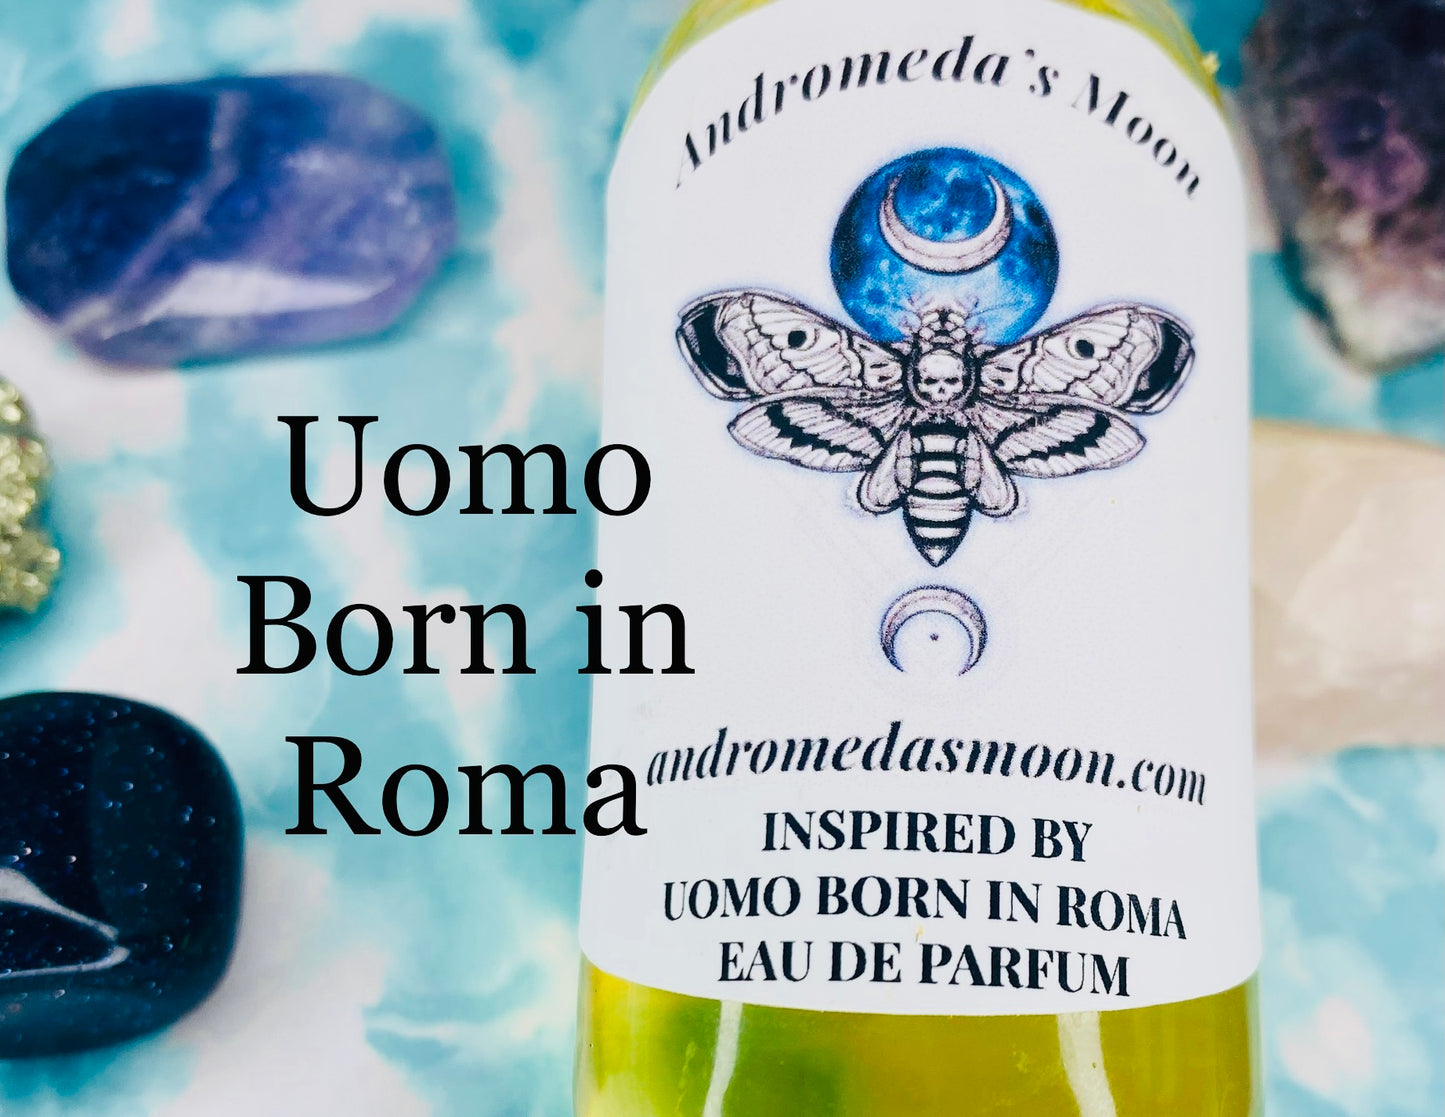 Inspired by Uomo Born in Roma EDP